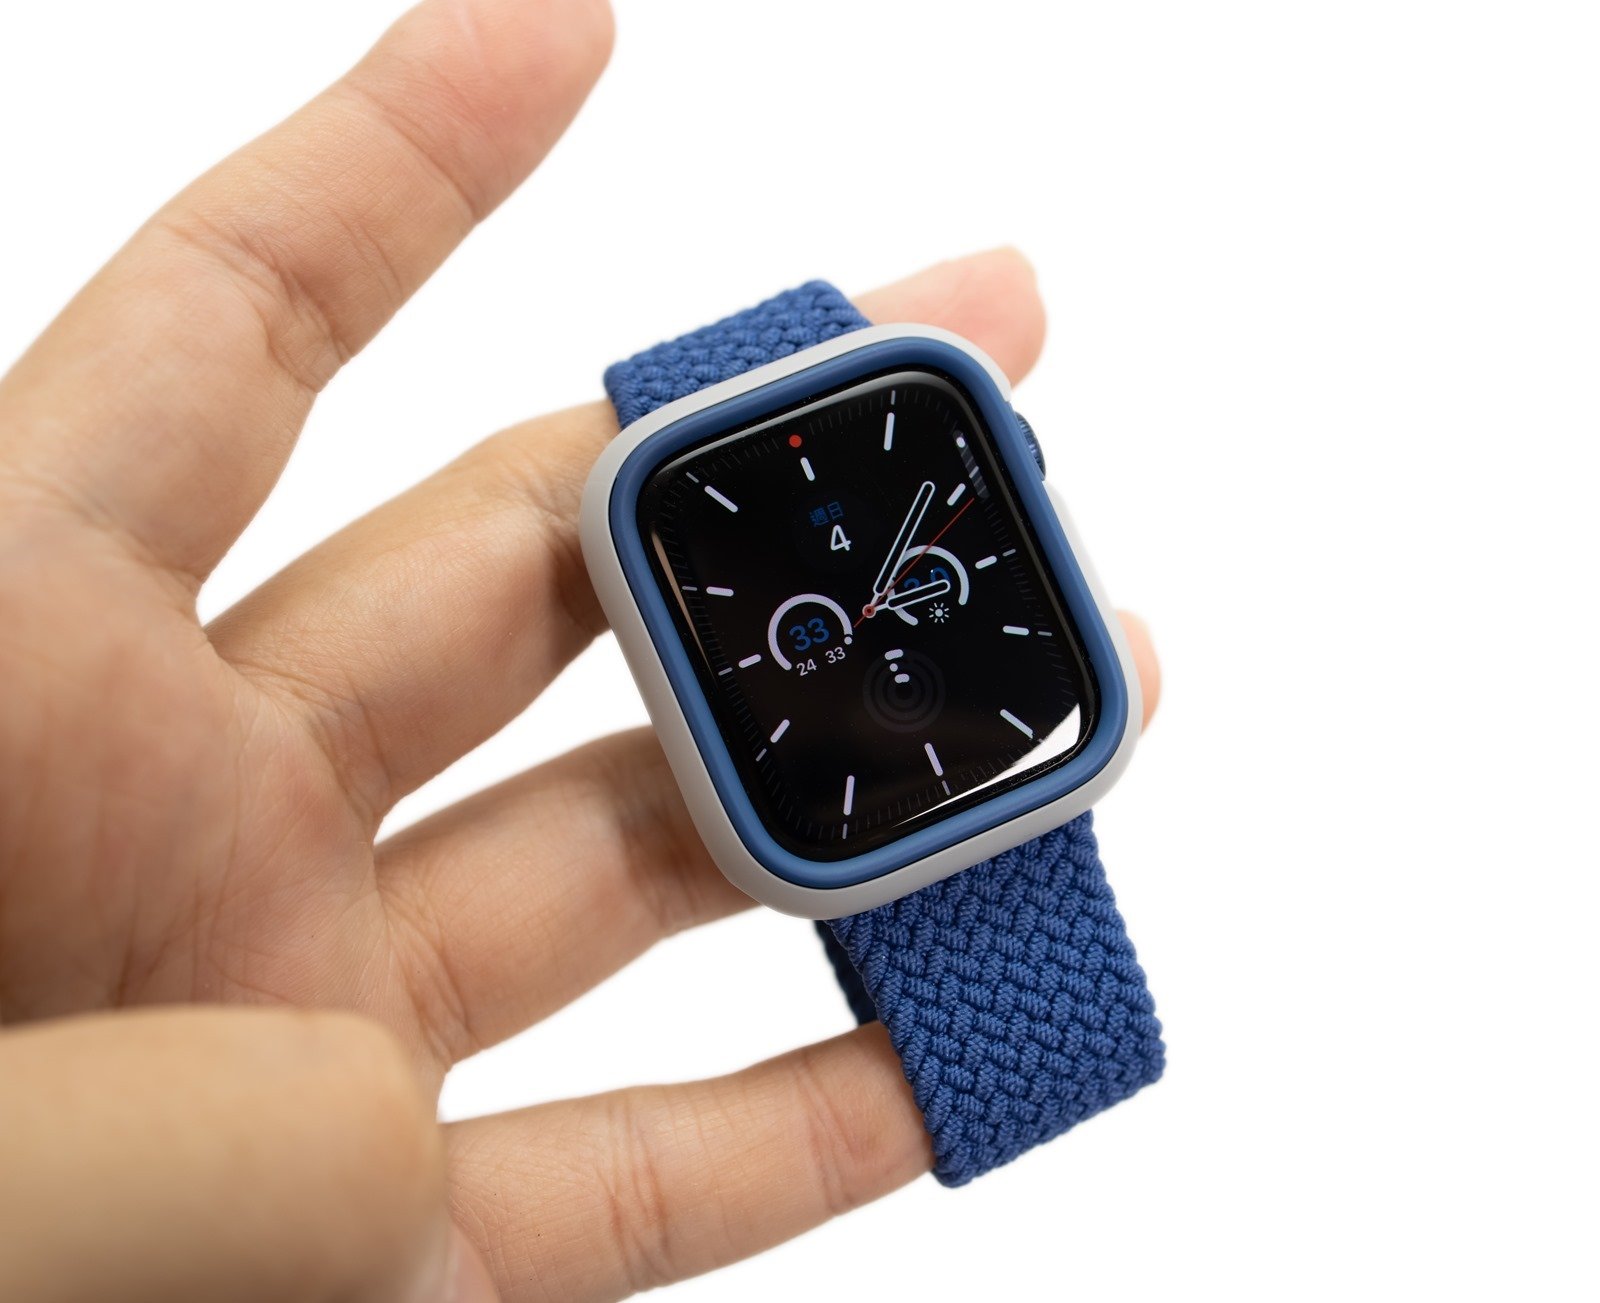 給 Apple Watch 強大保護也多點個性化！犀牛盾 Apple Watch 保護殼 CrashGuard NX 入手分享（S6 款式）@3C 達人廖阿輝